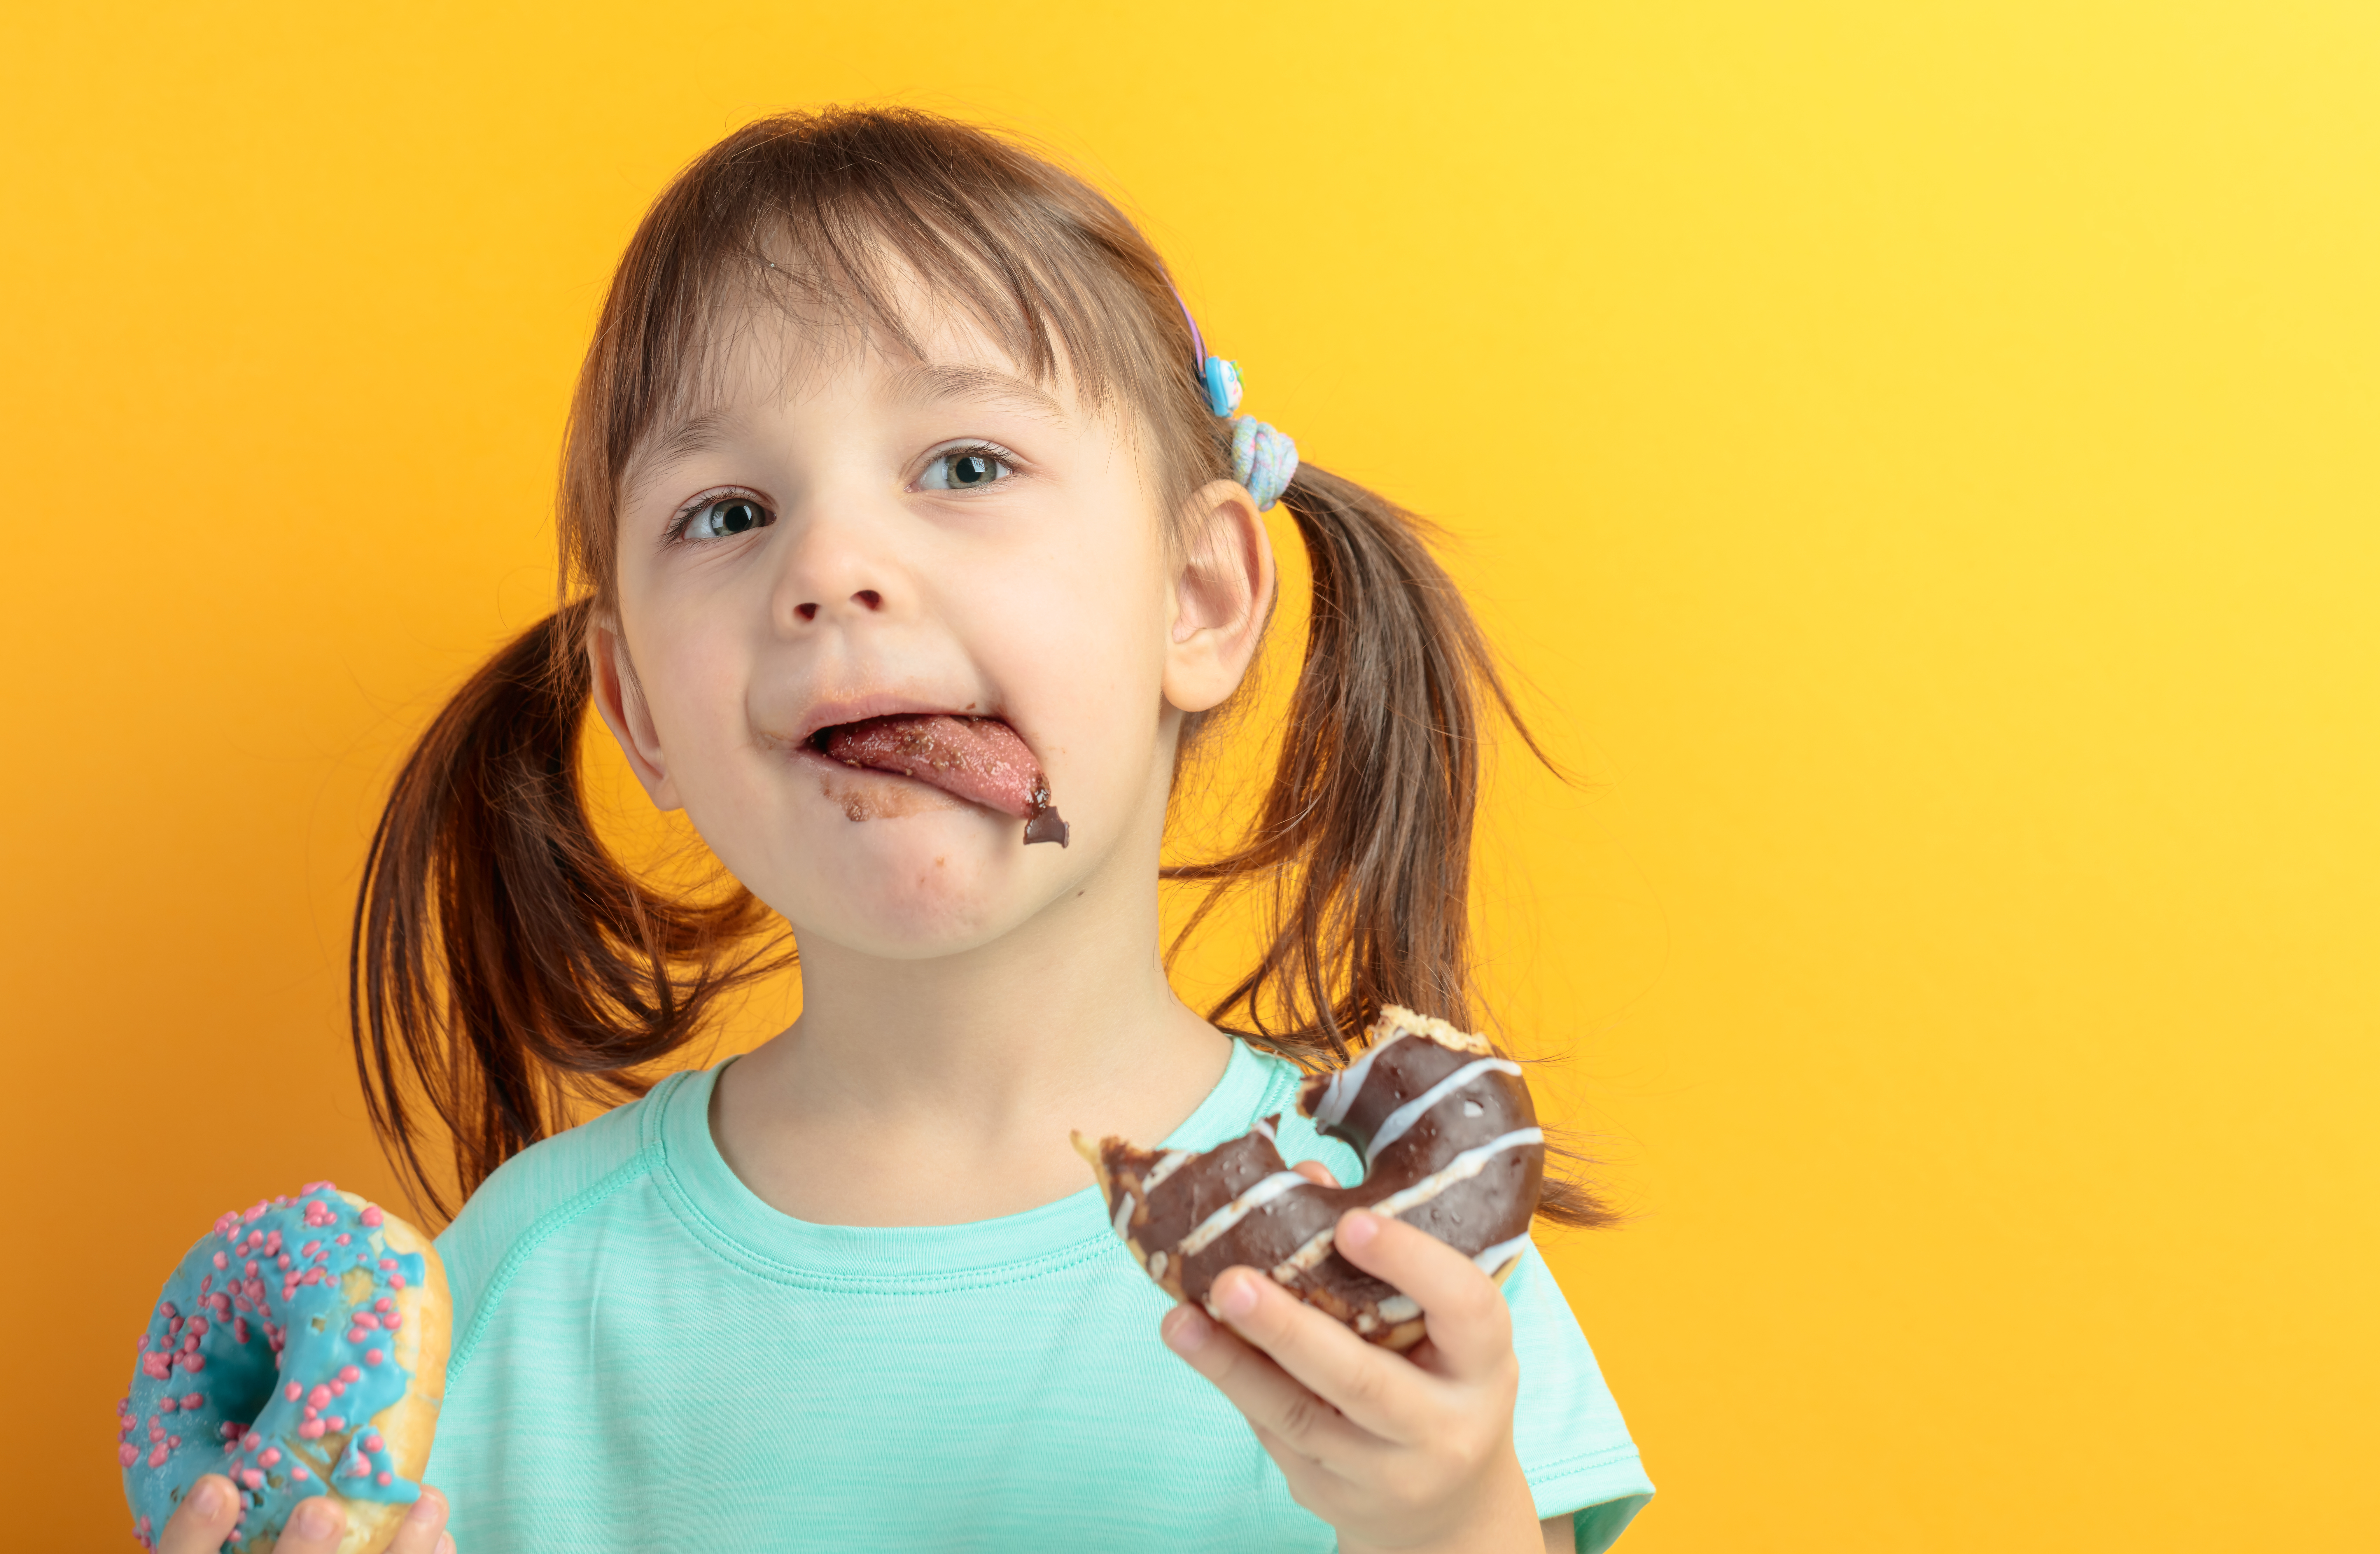 bambina che mangia ciambelle si lecca le labbra sporche di cioccolato